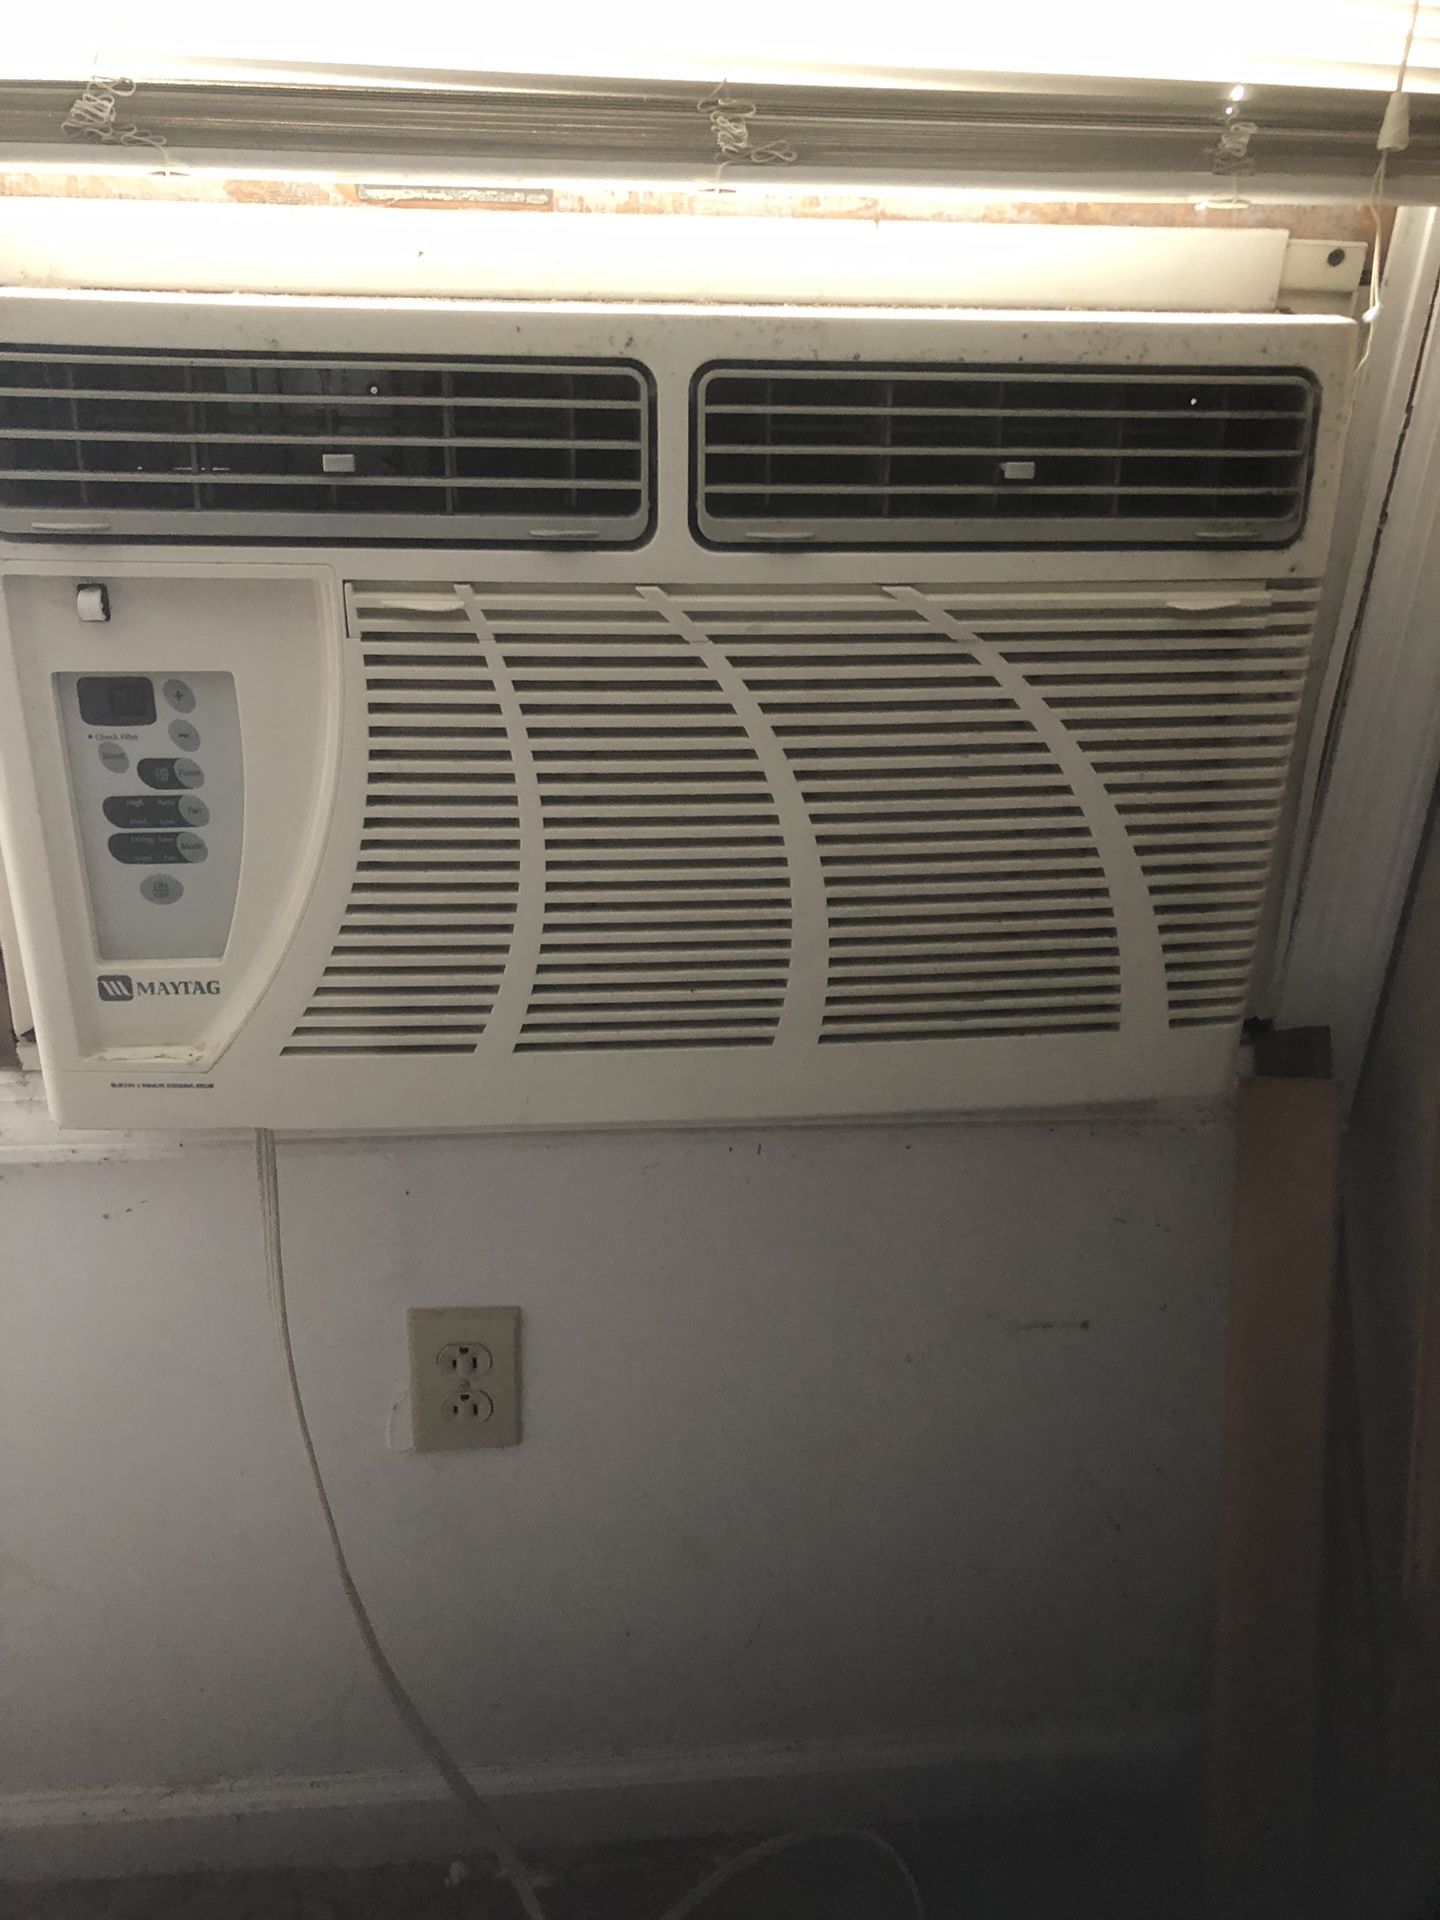 Maytag window Air Conditioner, 12000 BTU